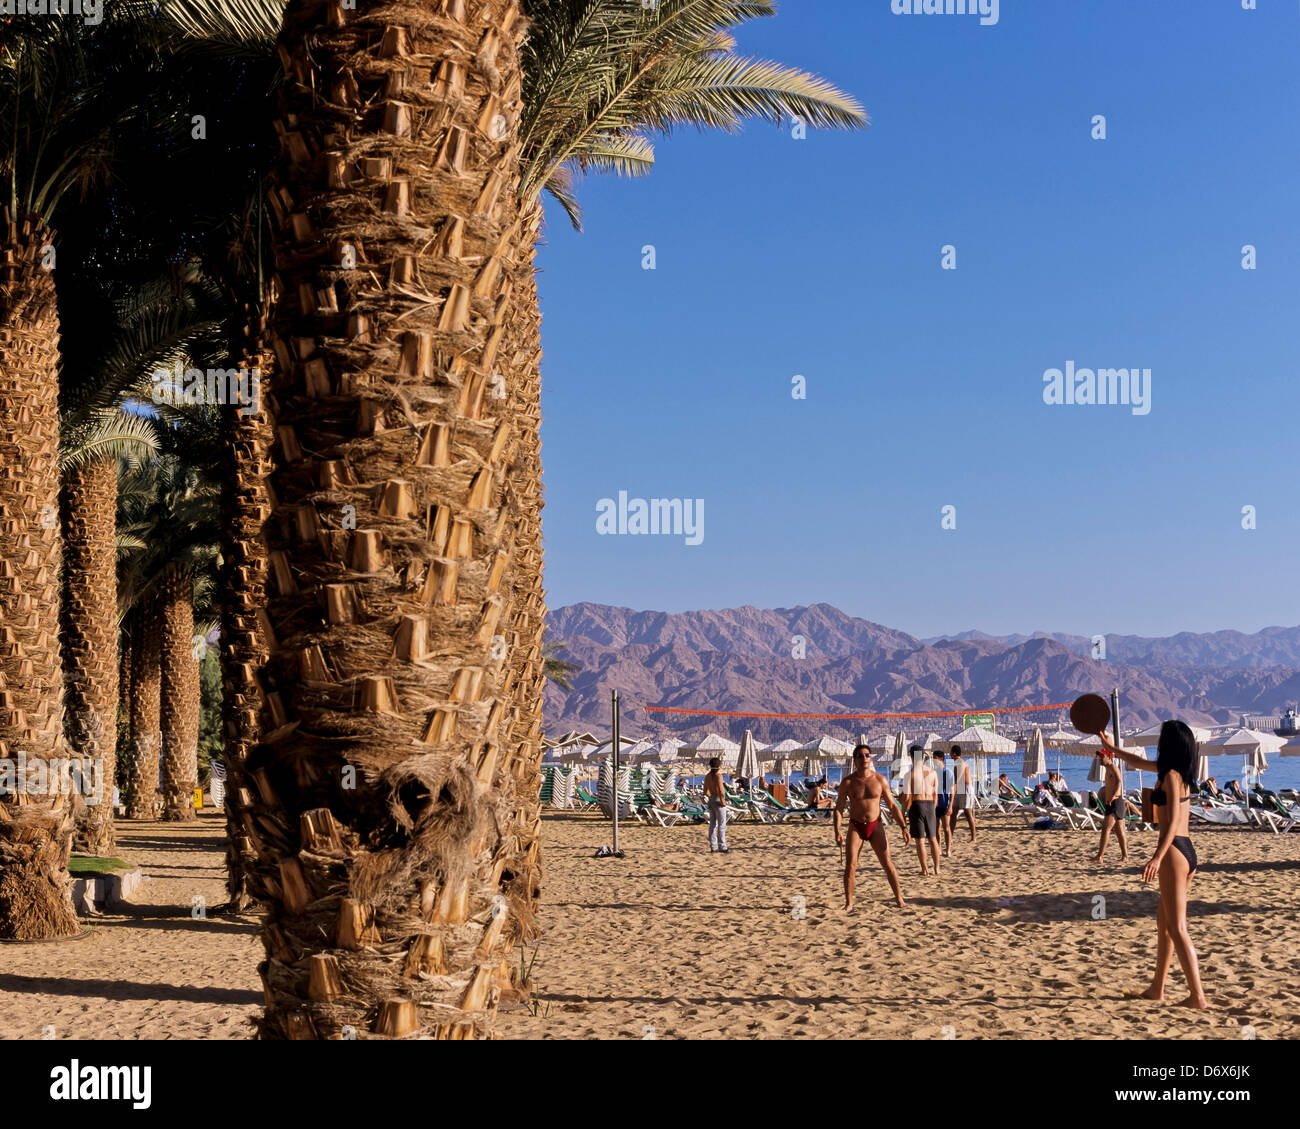 8593. Nevi'ot Beach, Eilat, Israel, Middle East Stock Photo